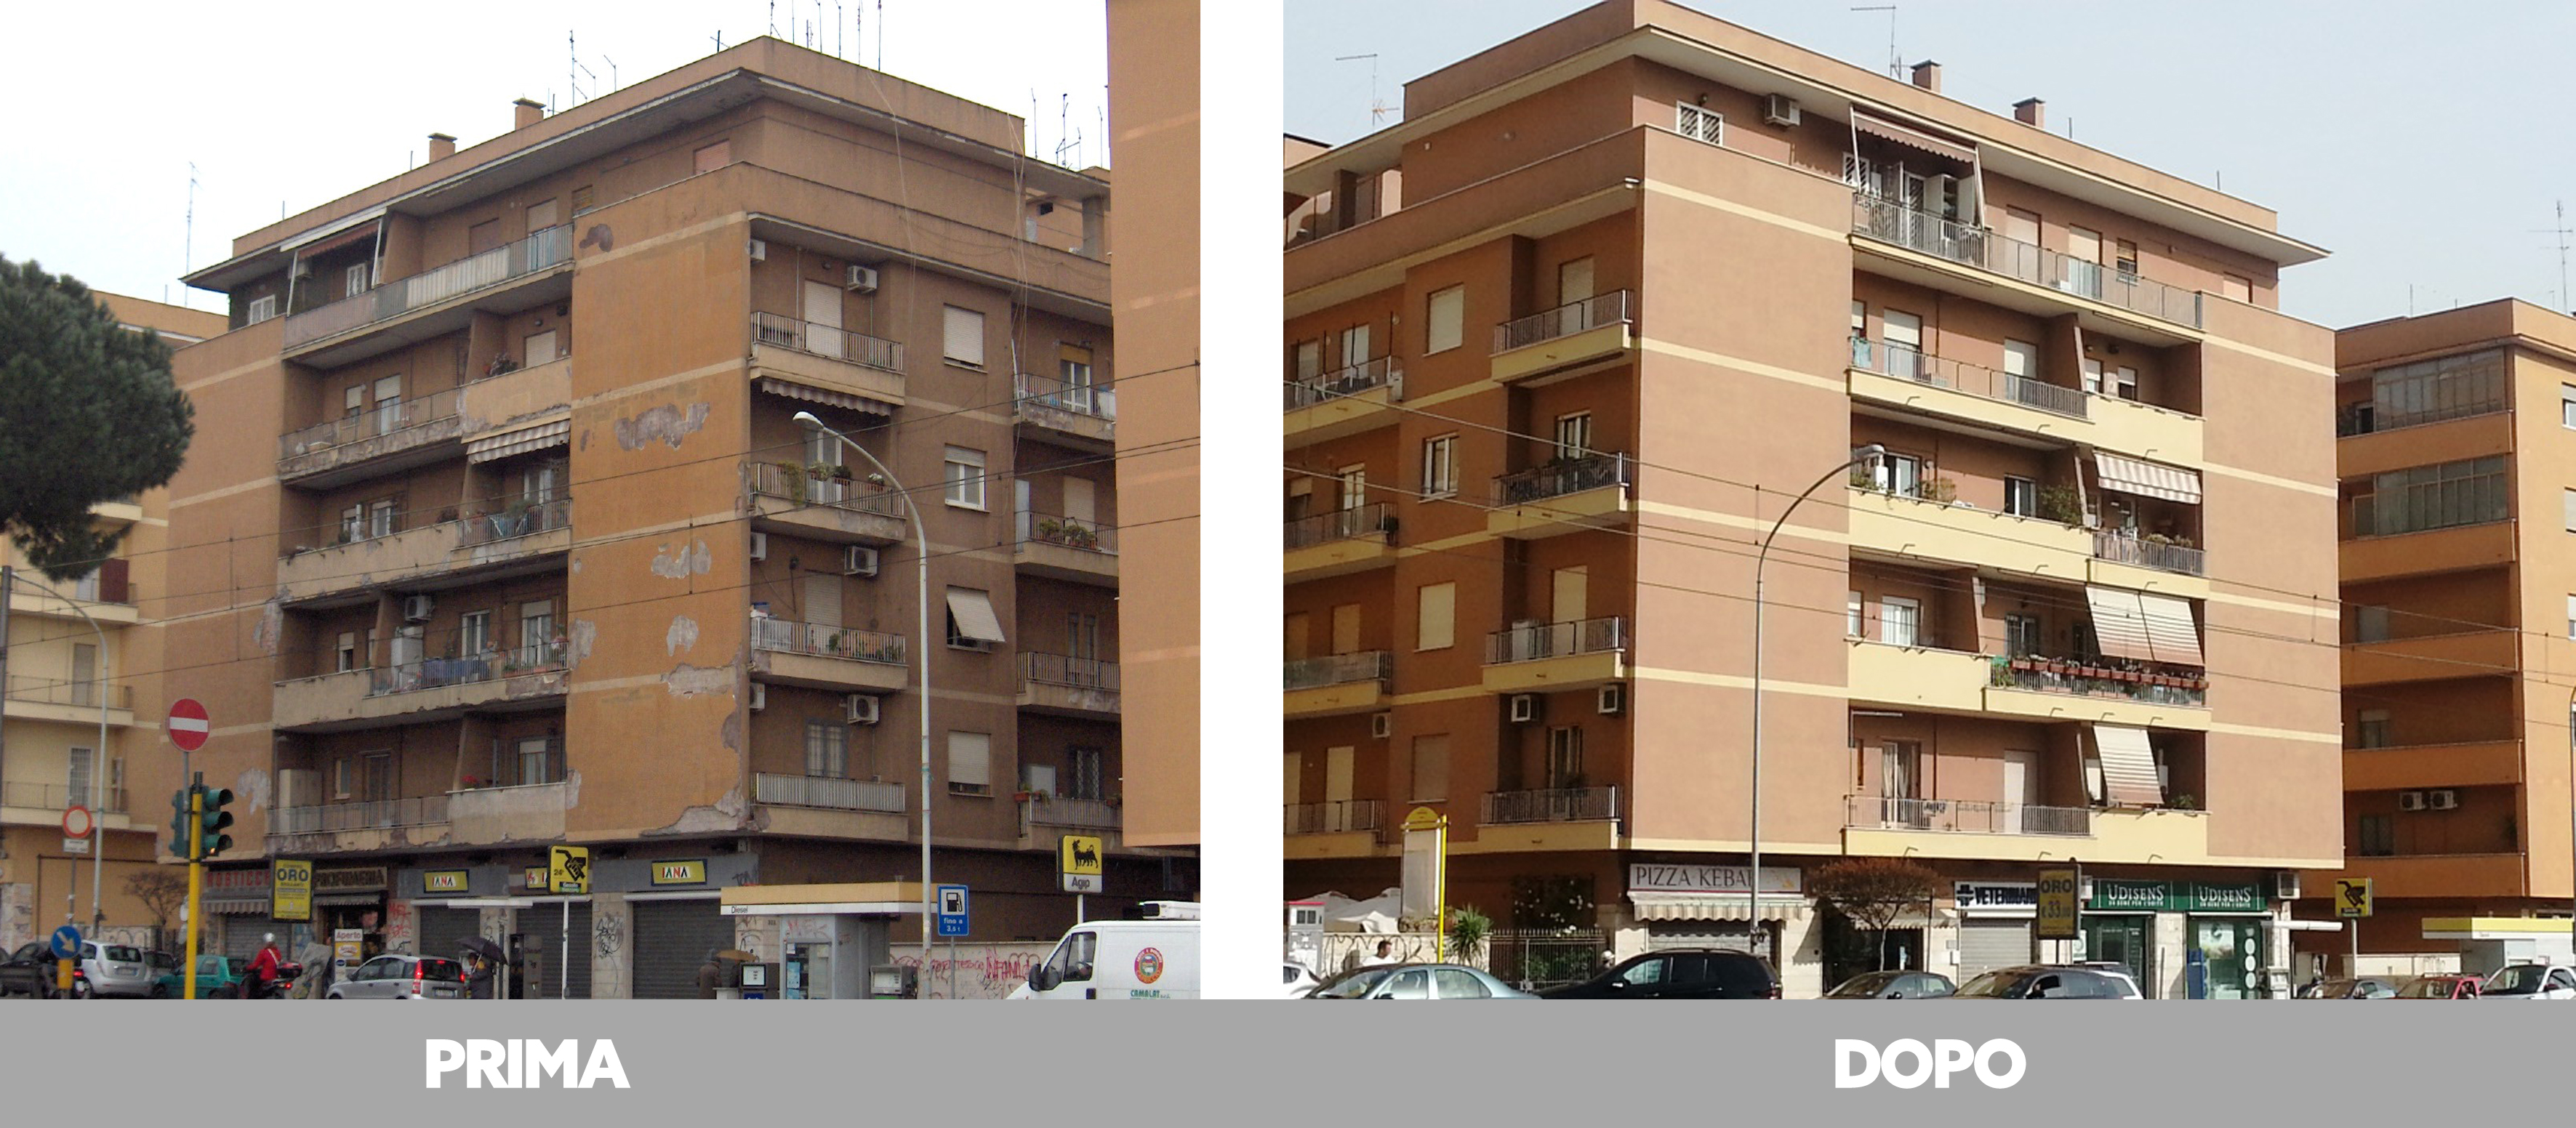 Rifacimento facciata condominiale nel quartiere Prenestino, Roma